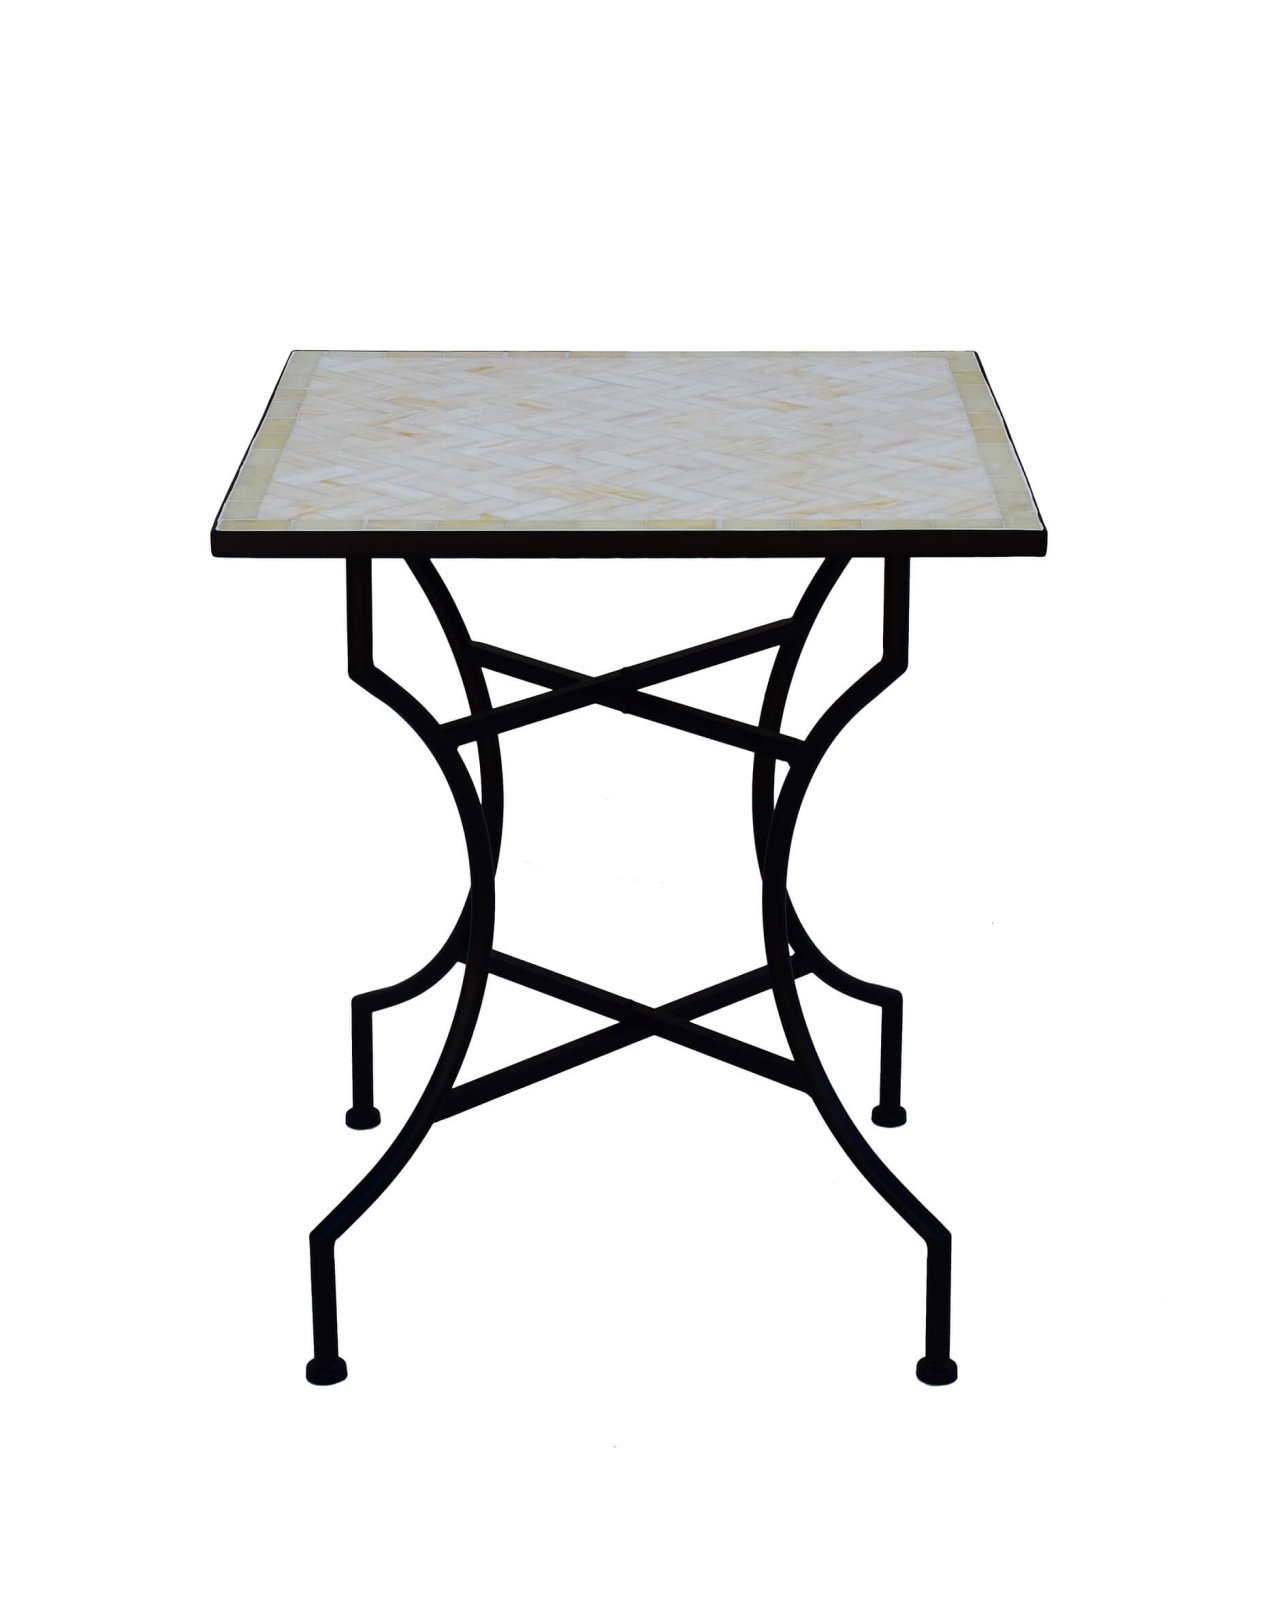 San Marino table off-white